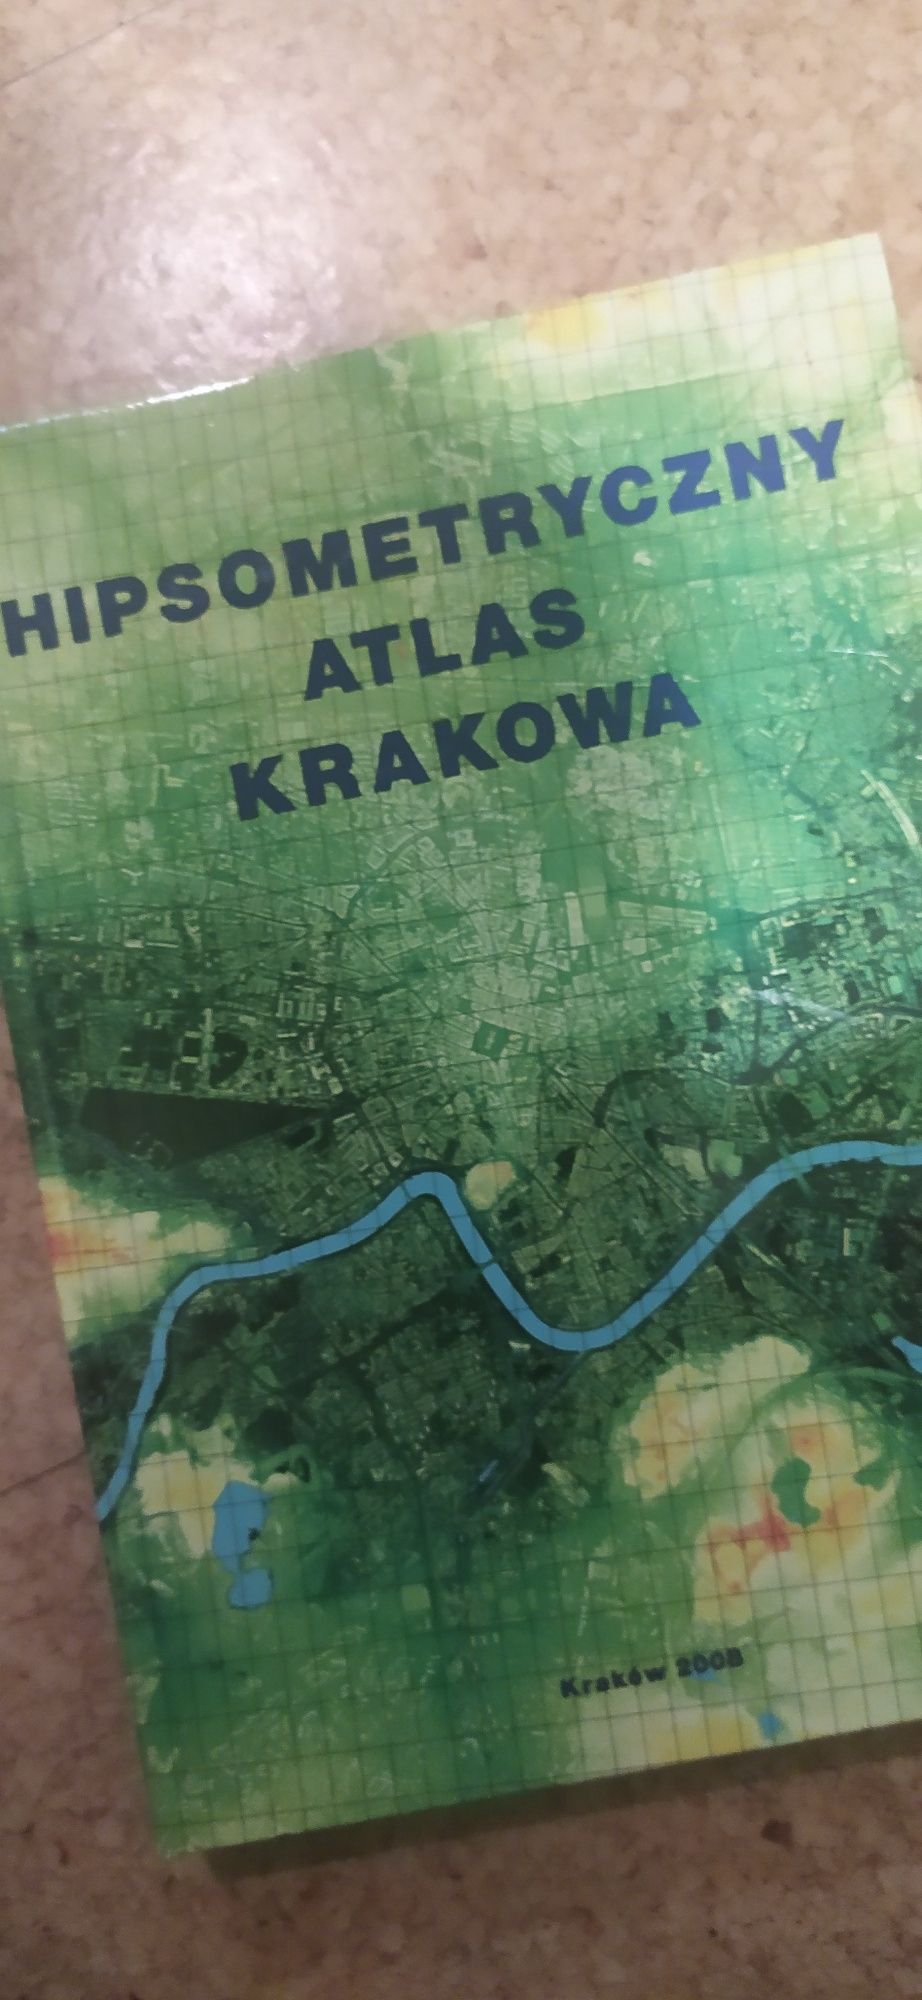 Hipsometryczny atlas Krakowa, 2008